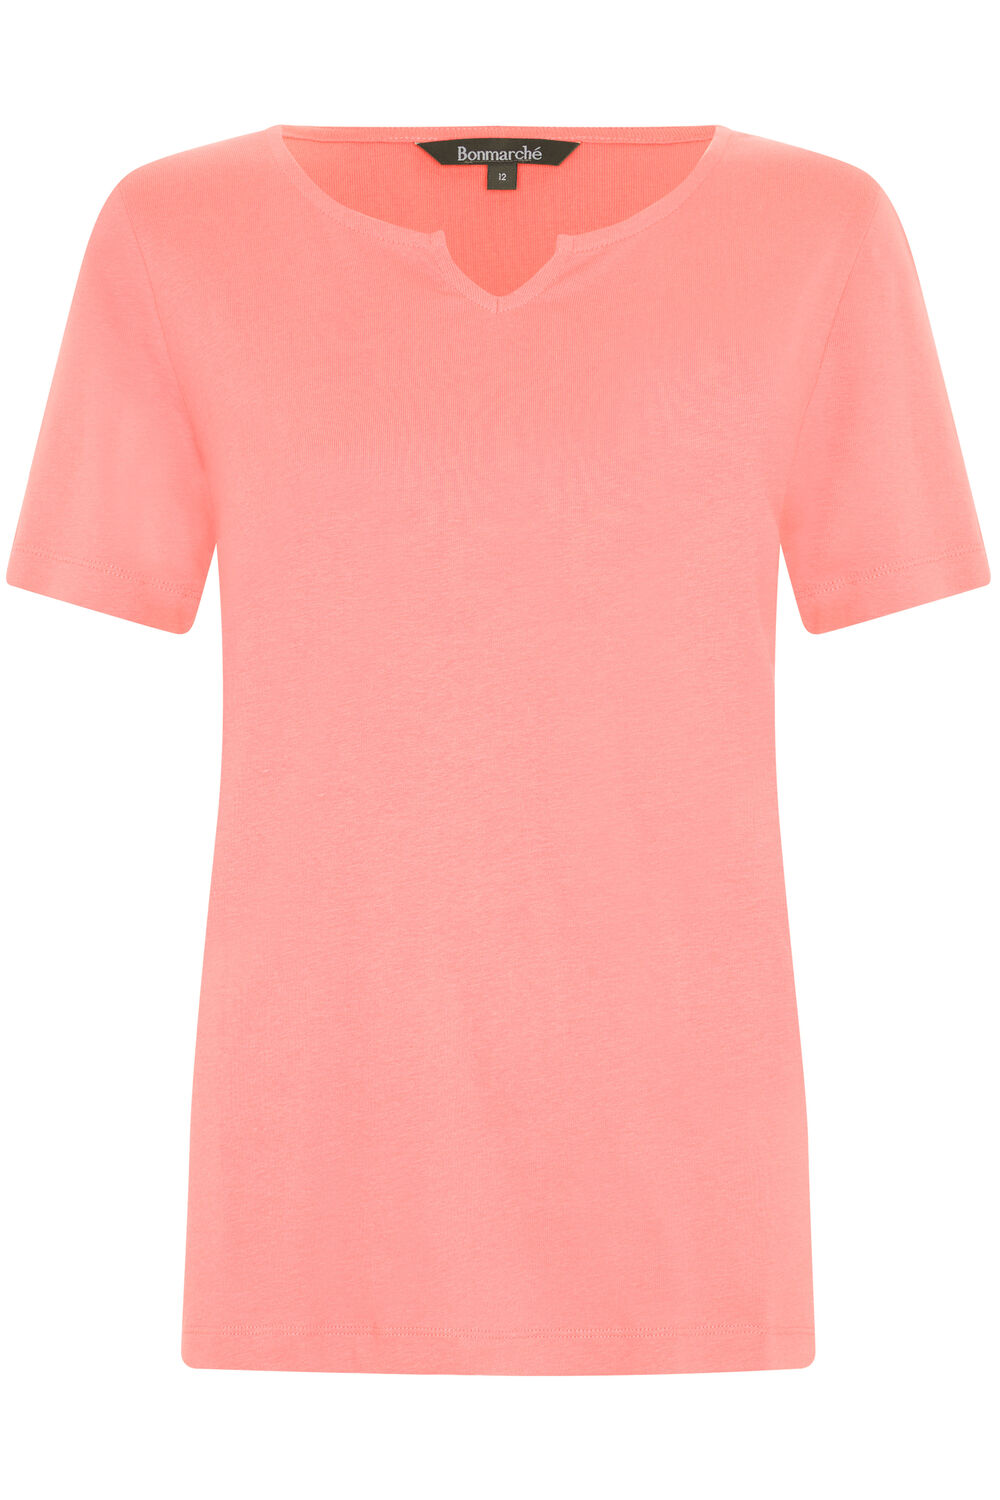 Bonmarche Coral Short Sleeve Plain Notch Neck T-Shirt, Size: 16